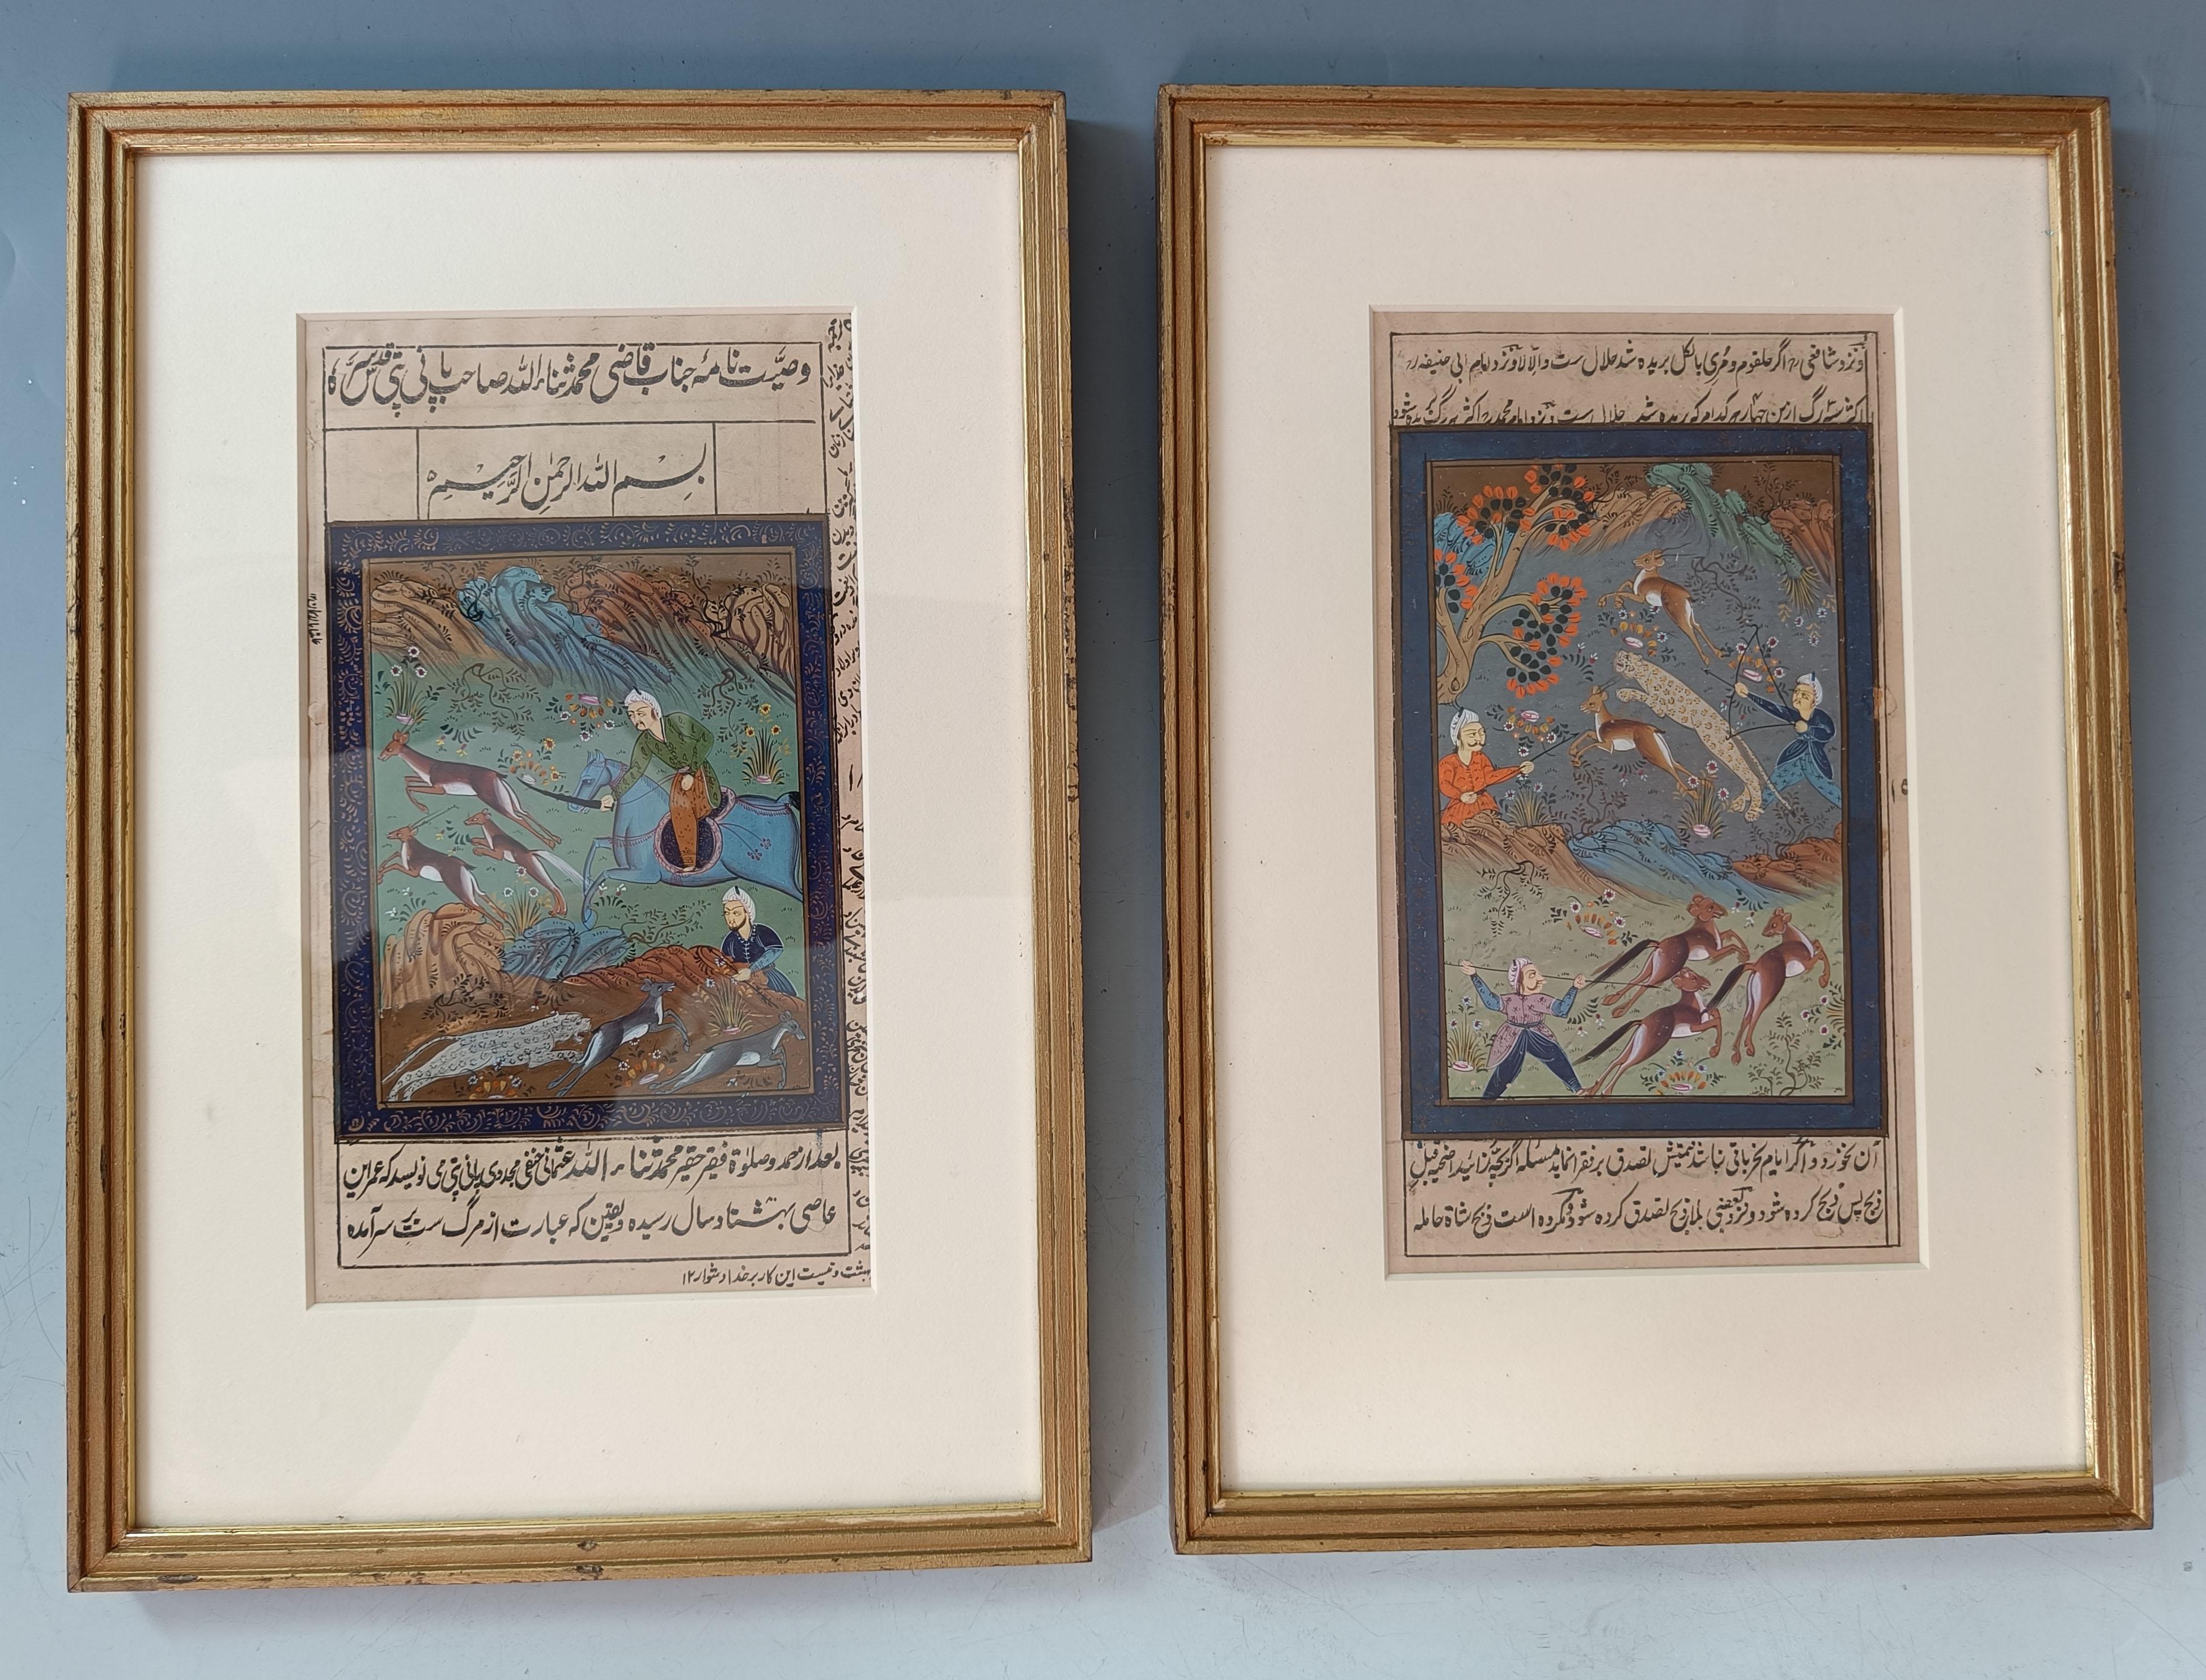 Feine Gouache-Gemälde im Indo-Persischen Mughal-Stil  von Jagdszenen 

Ein Paar persische Miniaturgemälde mit Jagdszenen  Fein gemalt in Gouache mit einer schönen Farbpalette, jedes Bild umgeben von islamischer Kalligraphie. Wahrscheinlich Seiten